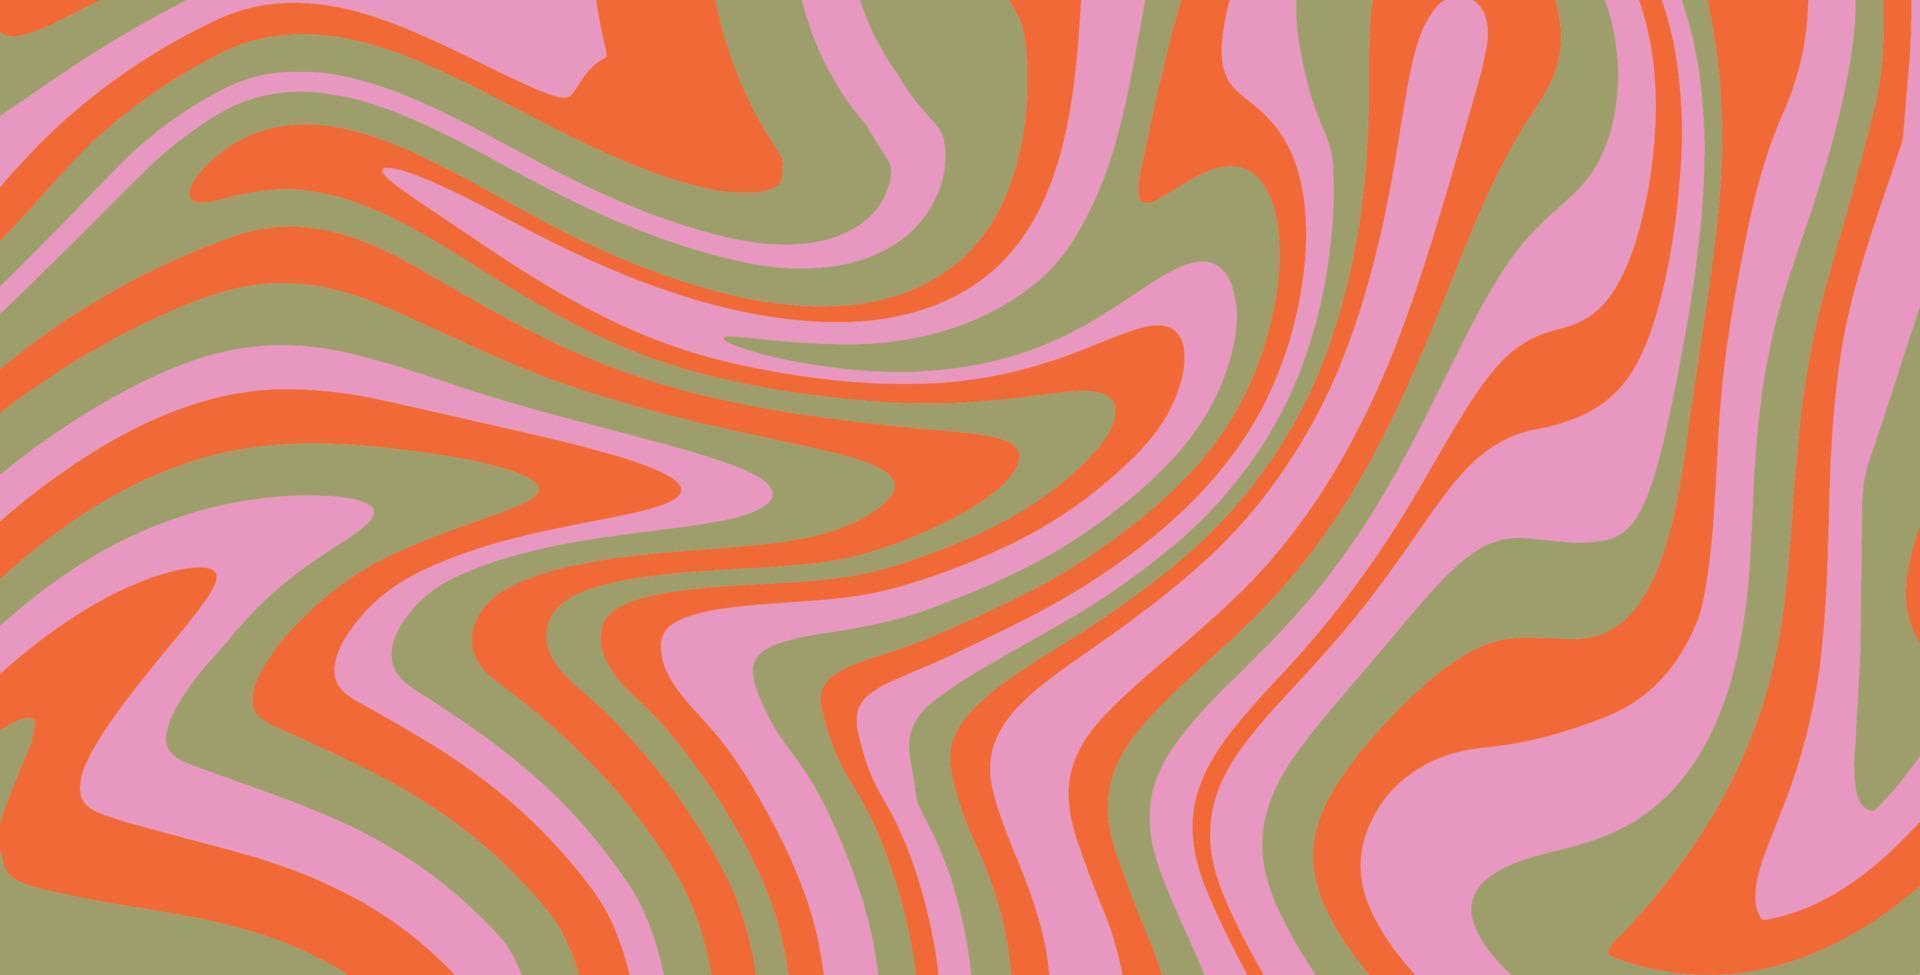 golvend kolken groovy patroon. jaren zeventig stijl, hippie achtergrond, psychedelisch Golf behang. hand- getrokken vlak vector illustratie